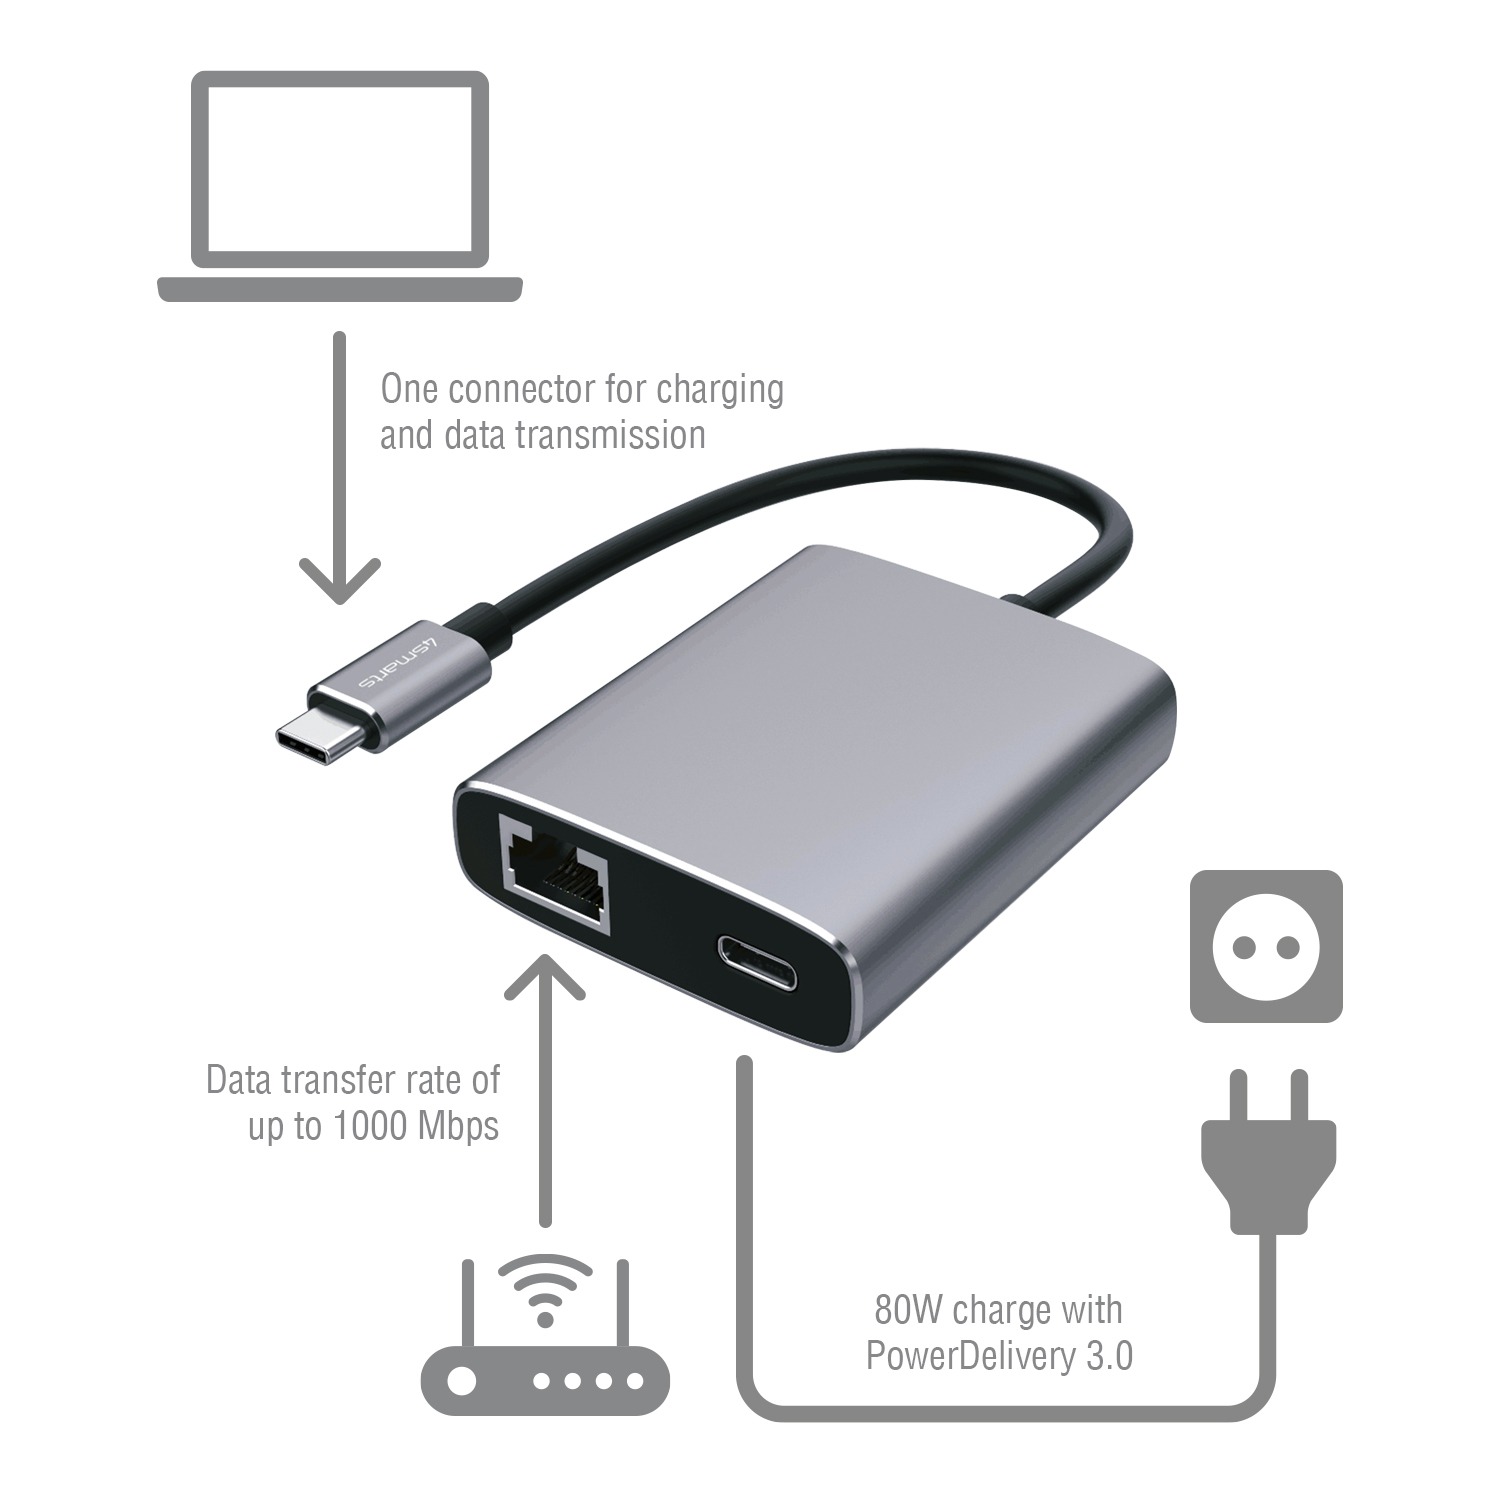 Adaptateur USB-C vers Ethernet et USB-C noir - Atom